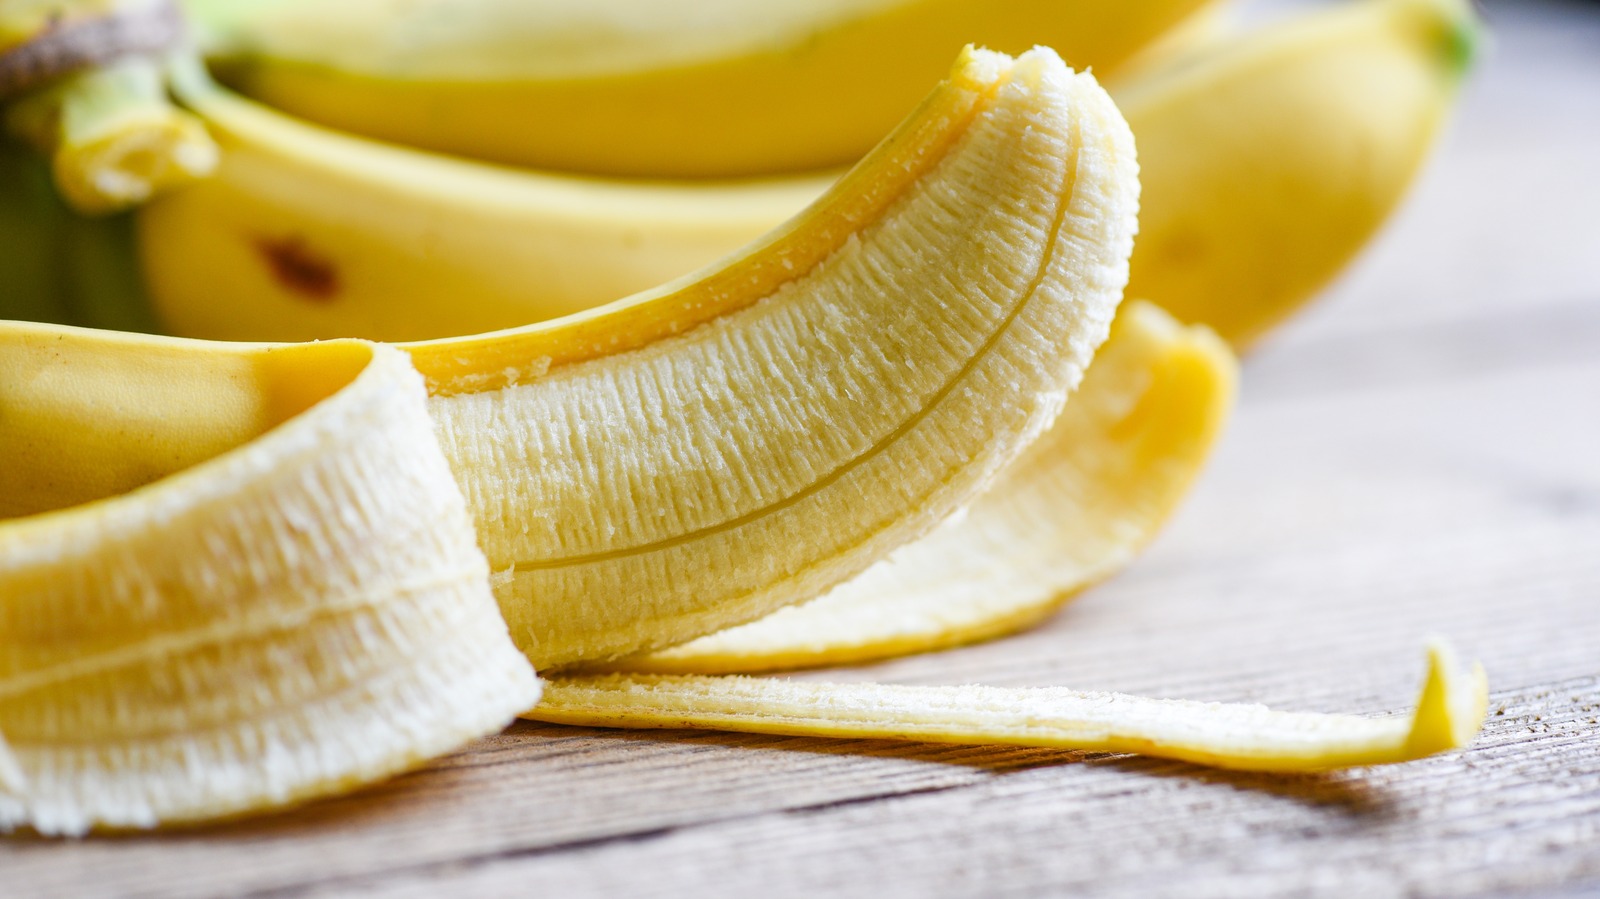 Действительно ли простые бананы Трейдера Джо за 19 центов дешевы?